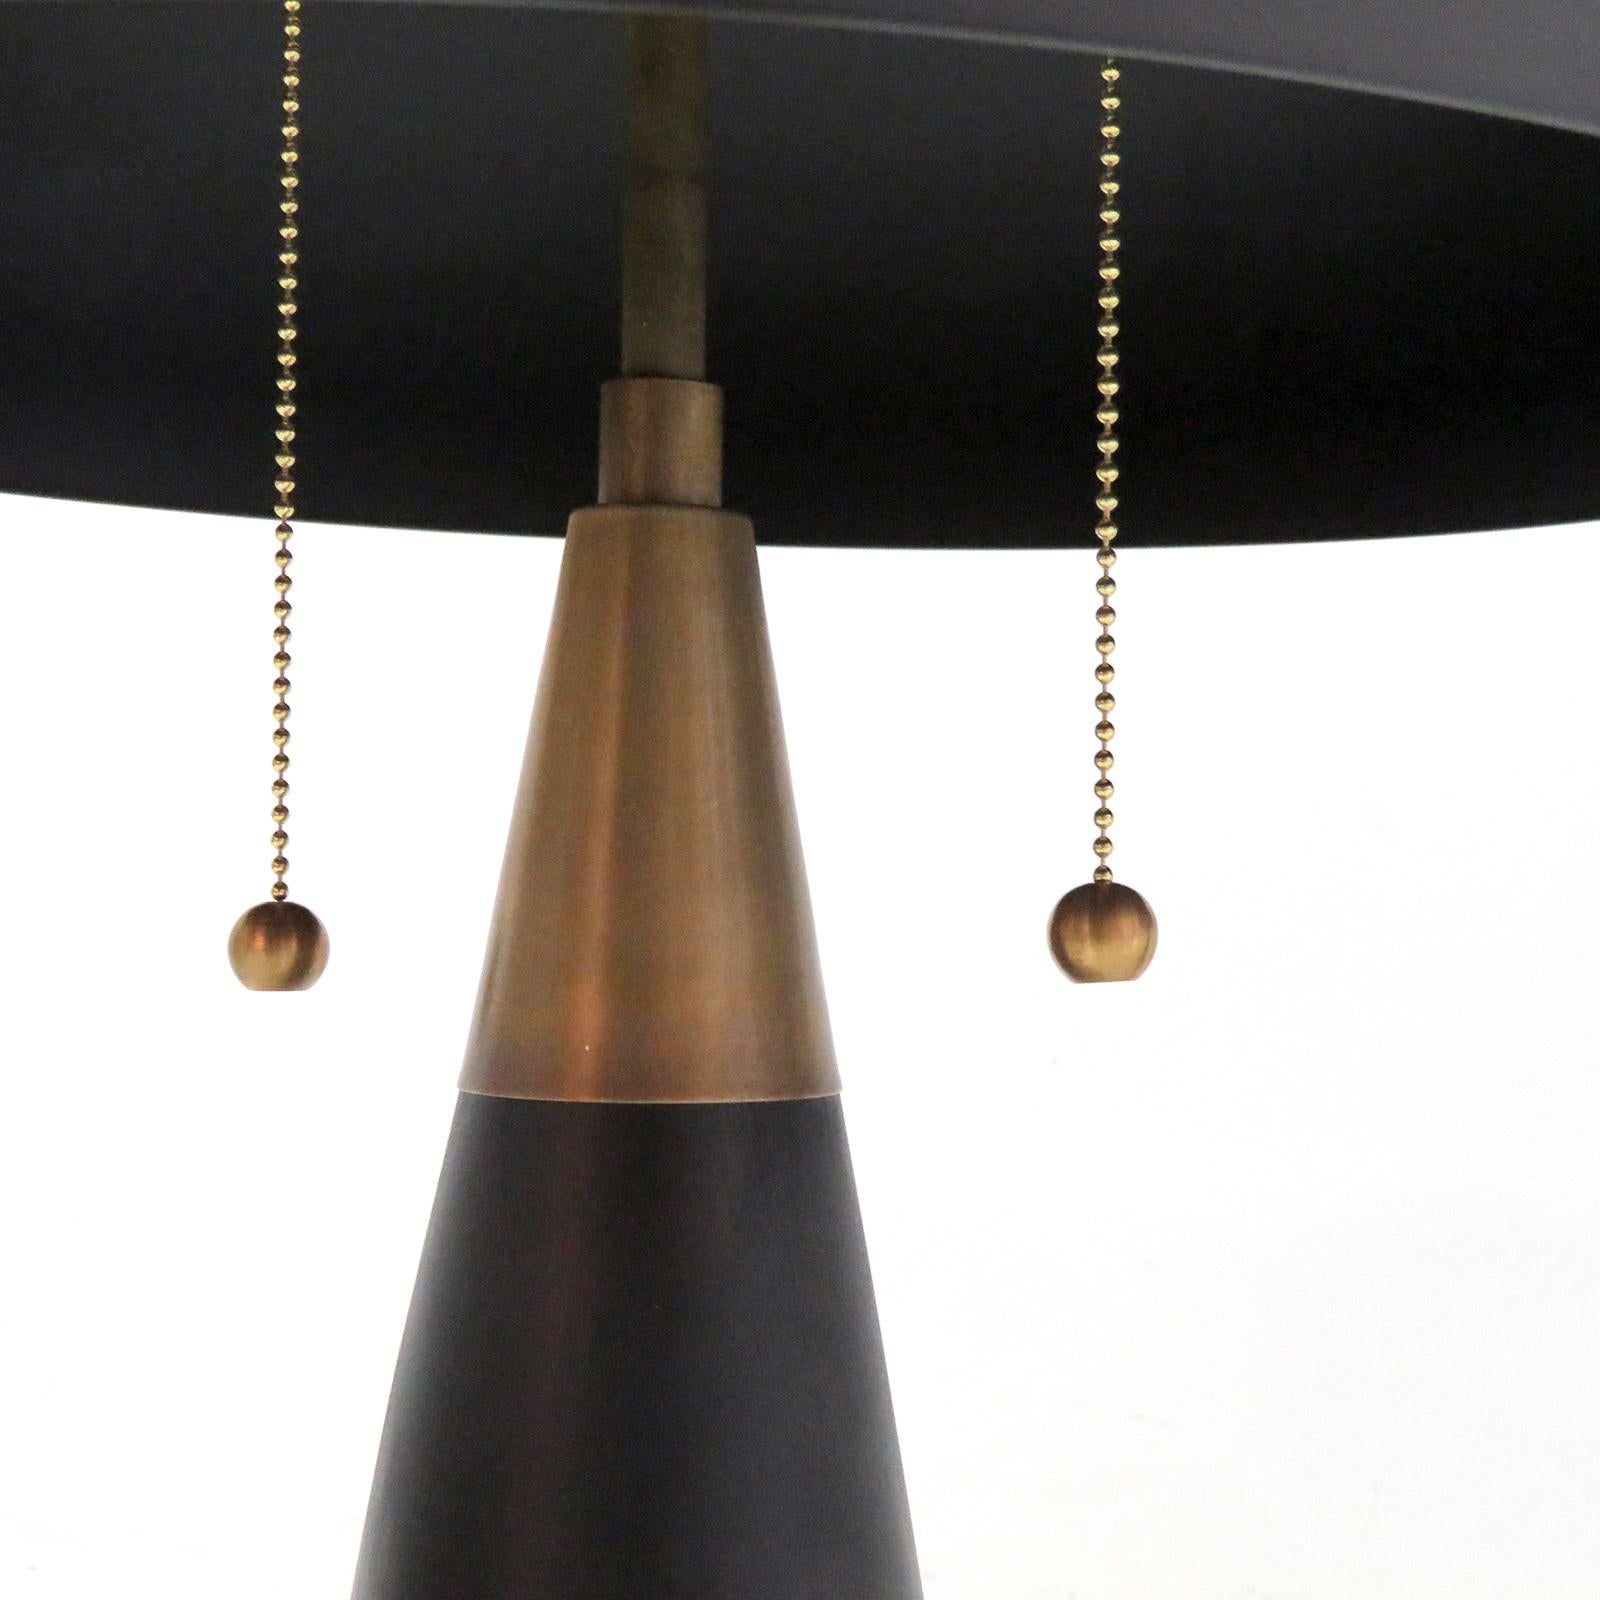 American Pair of 'Alvaro' Table Lamps